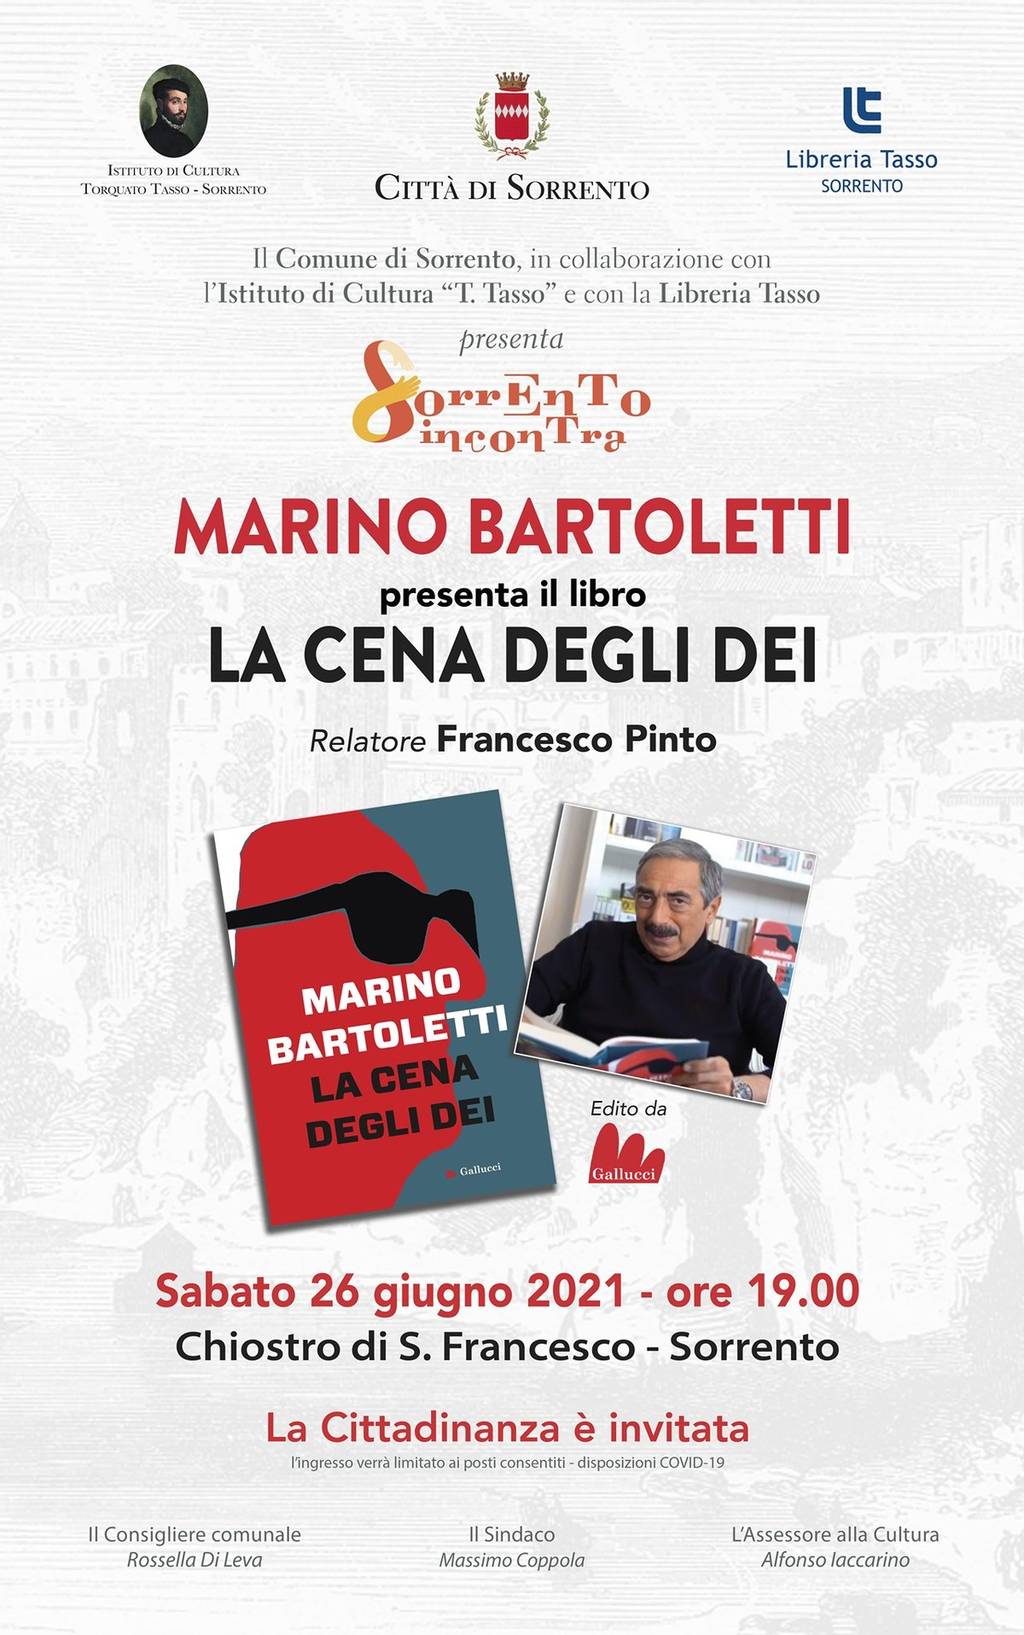 Marino Bartoletti: "La cena degli dei"